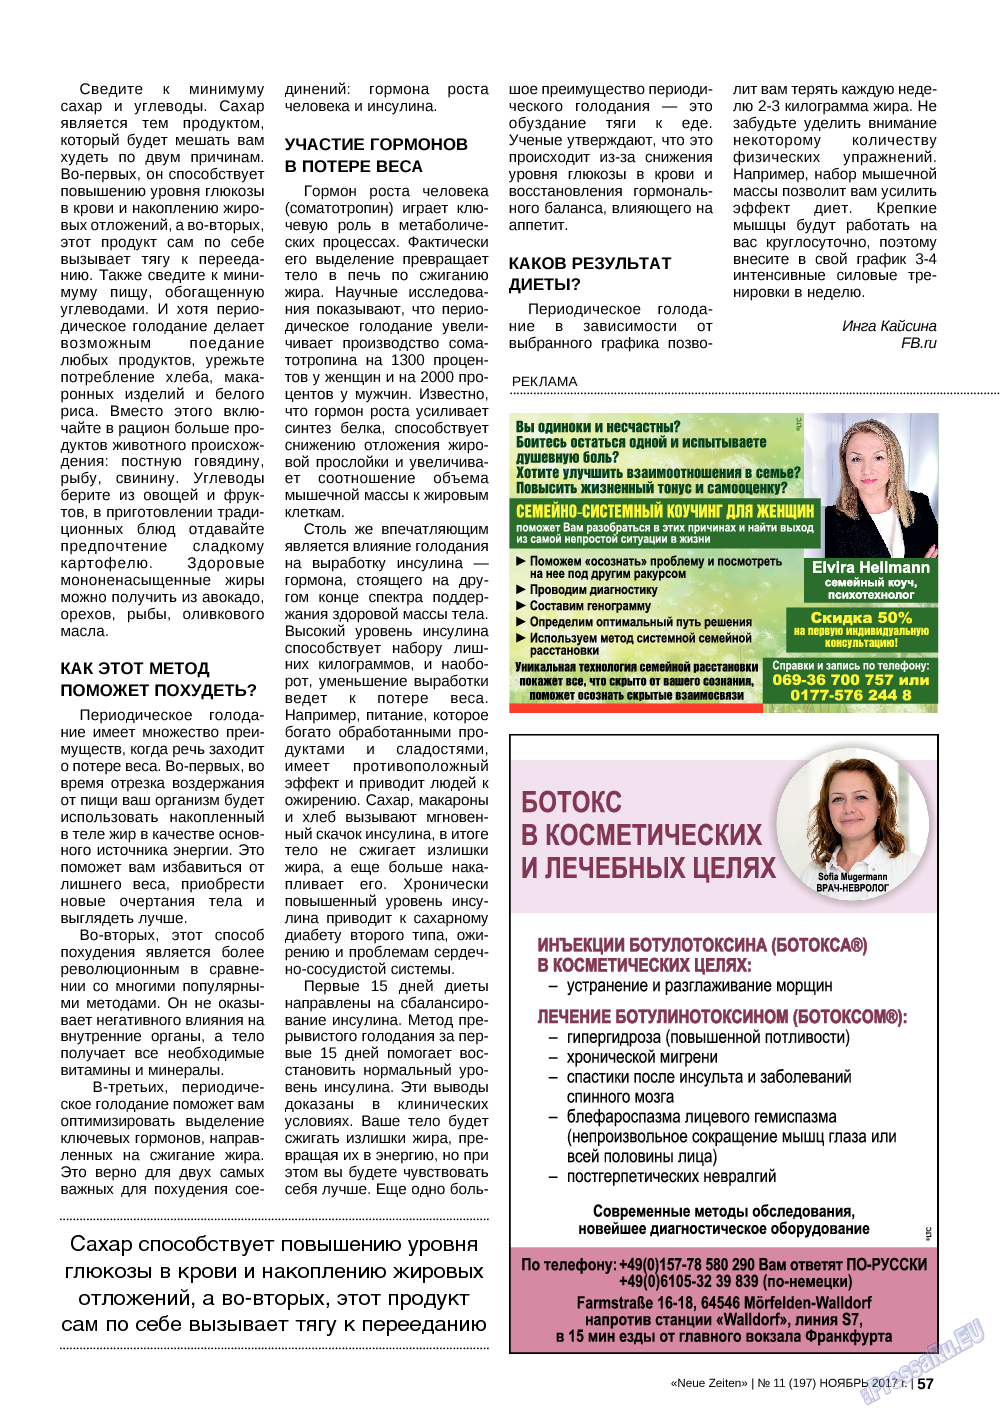 Neue Zeiten, журнал. 2017 №11 стр.57